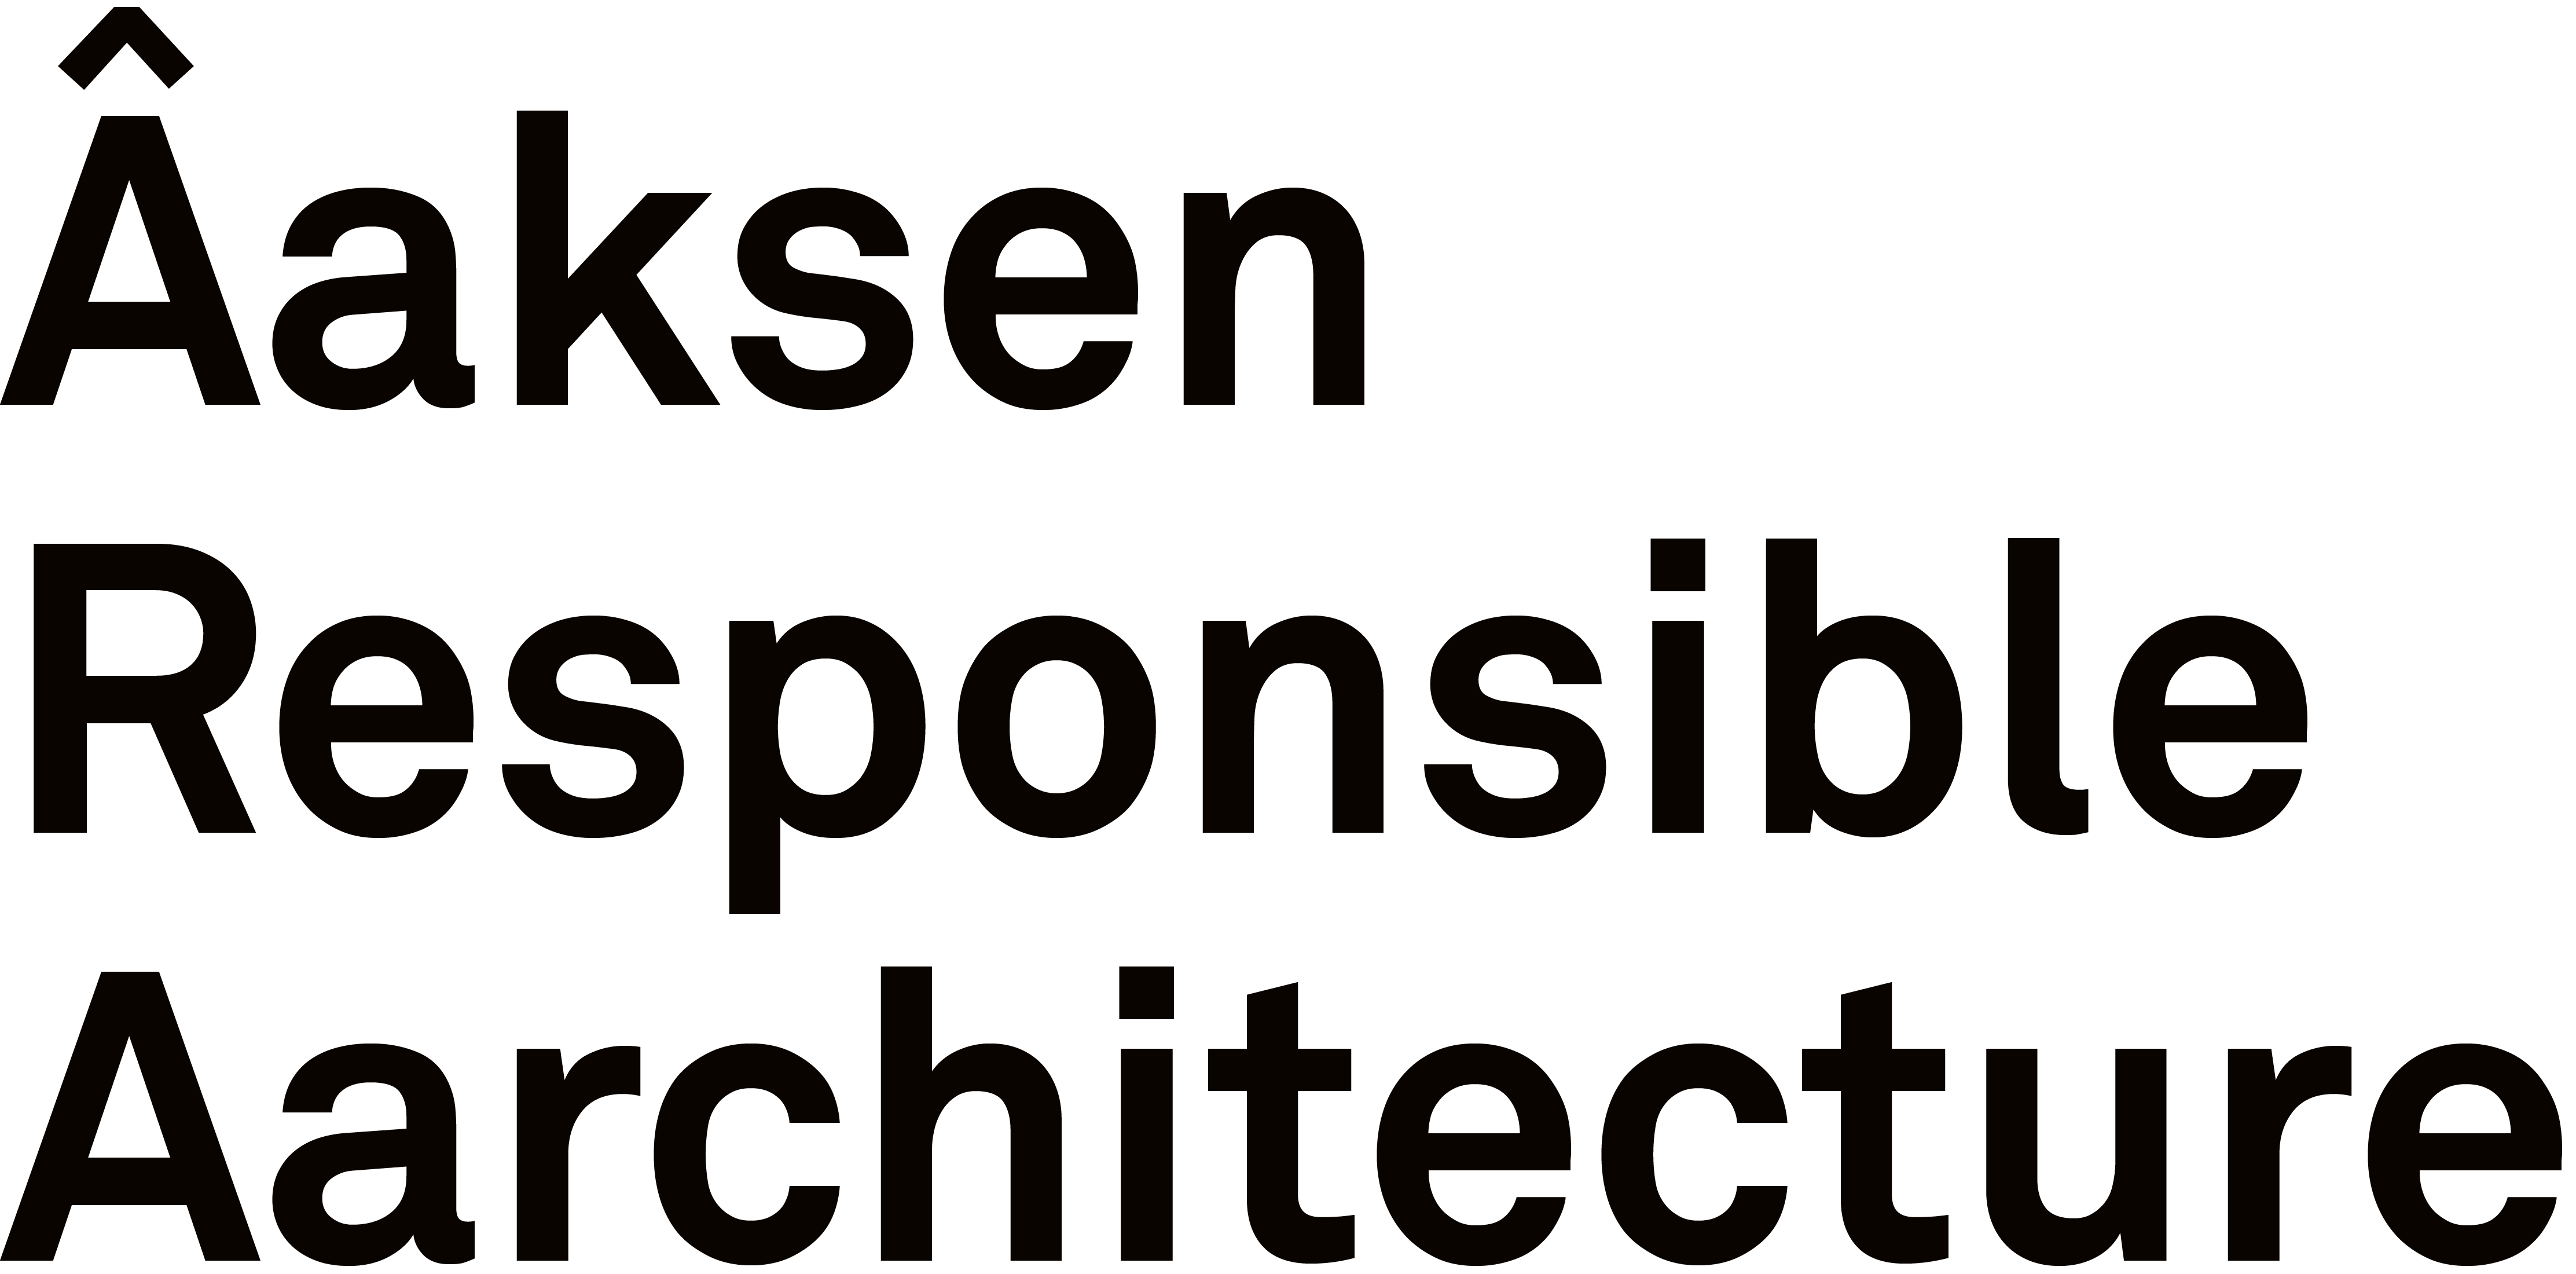 Aaksen Responsible Aarchitecture